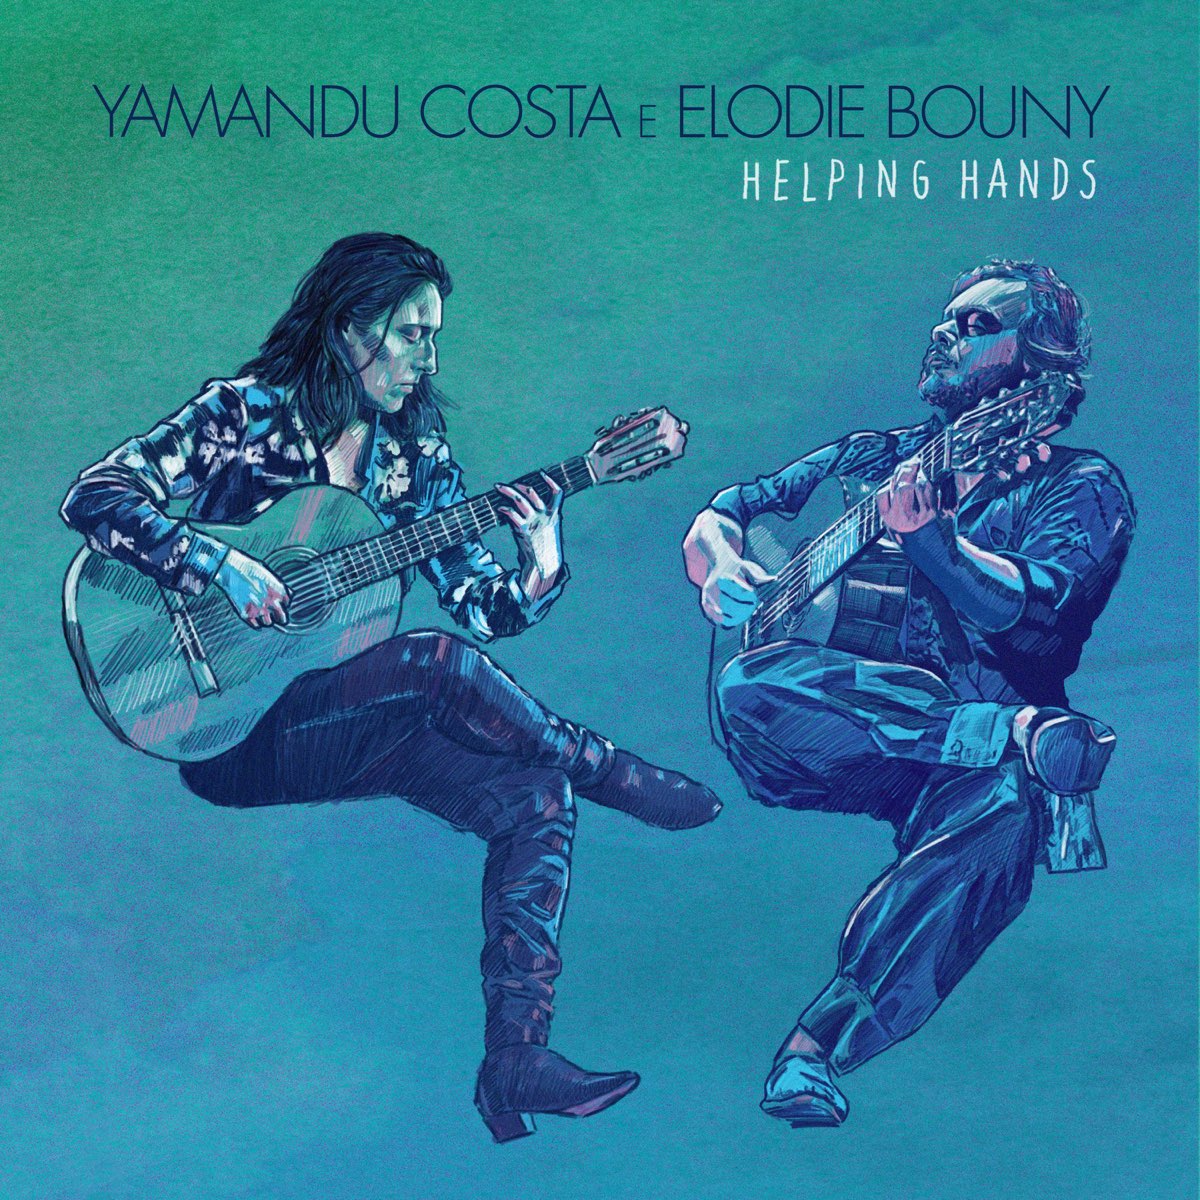 revistaprosaversoearte.com - Yamandu Costa e Elodie Bouny lançam álbum 'Helping Hands'